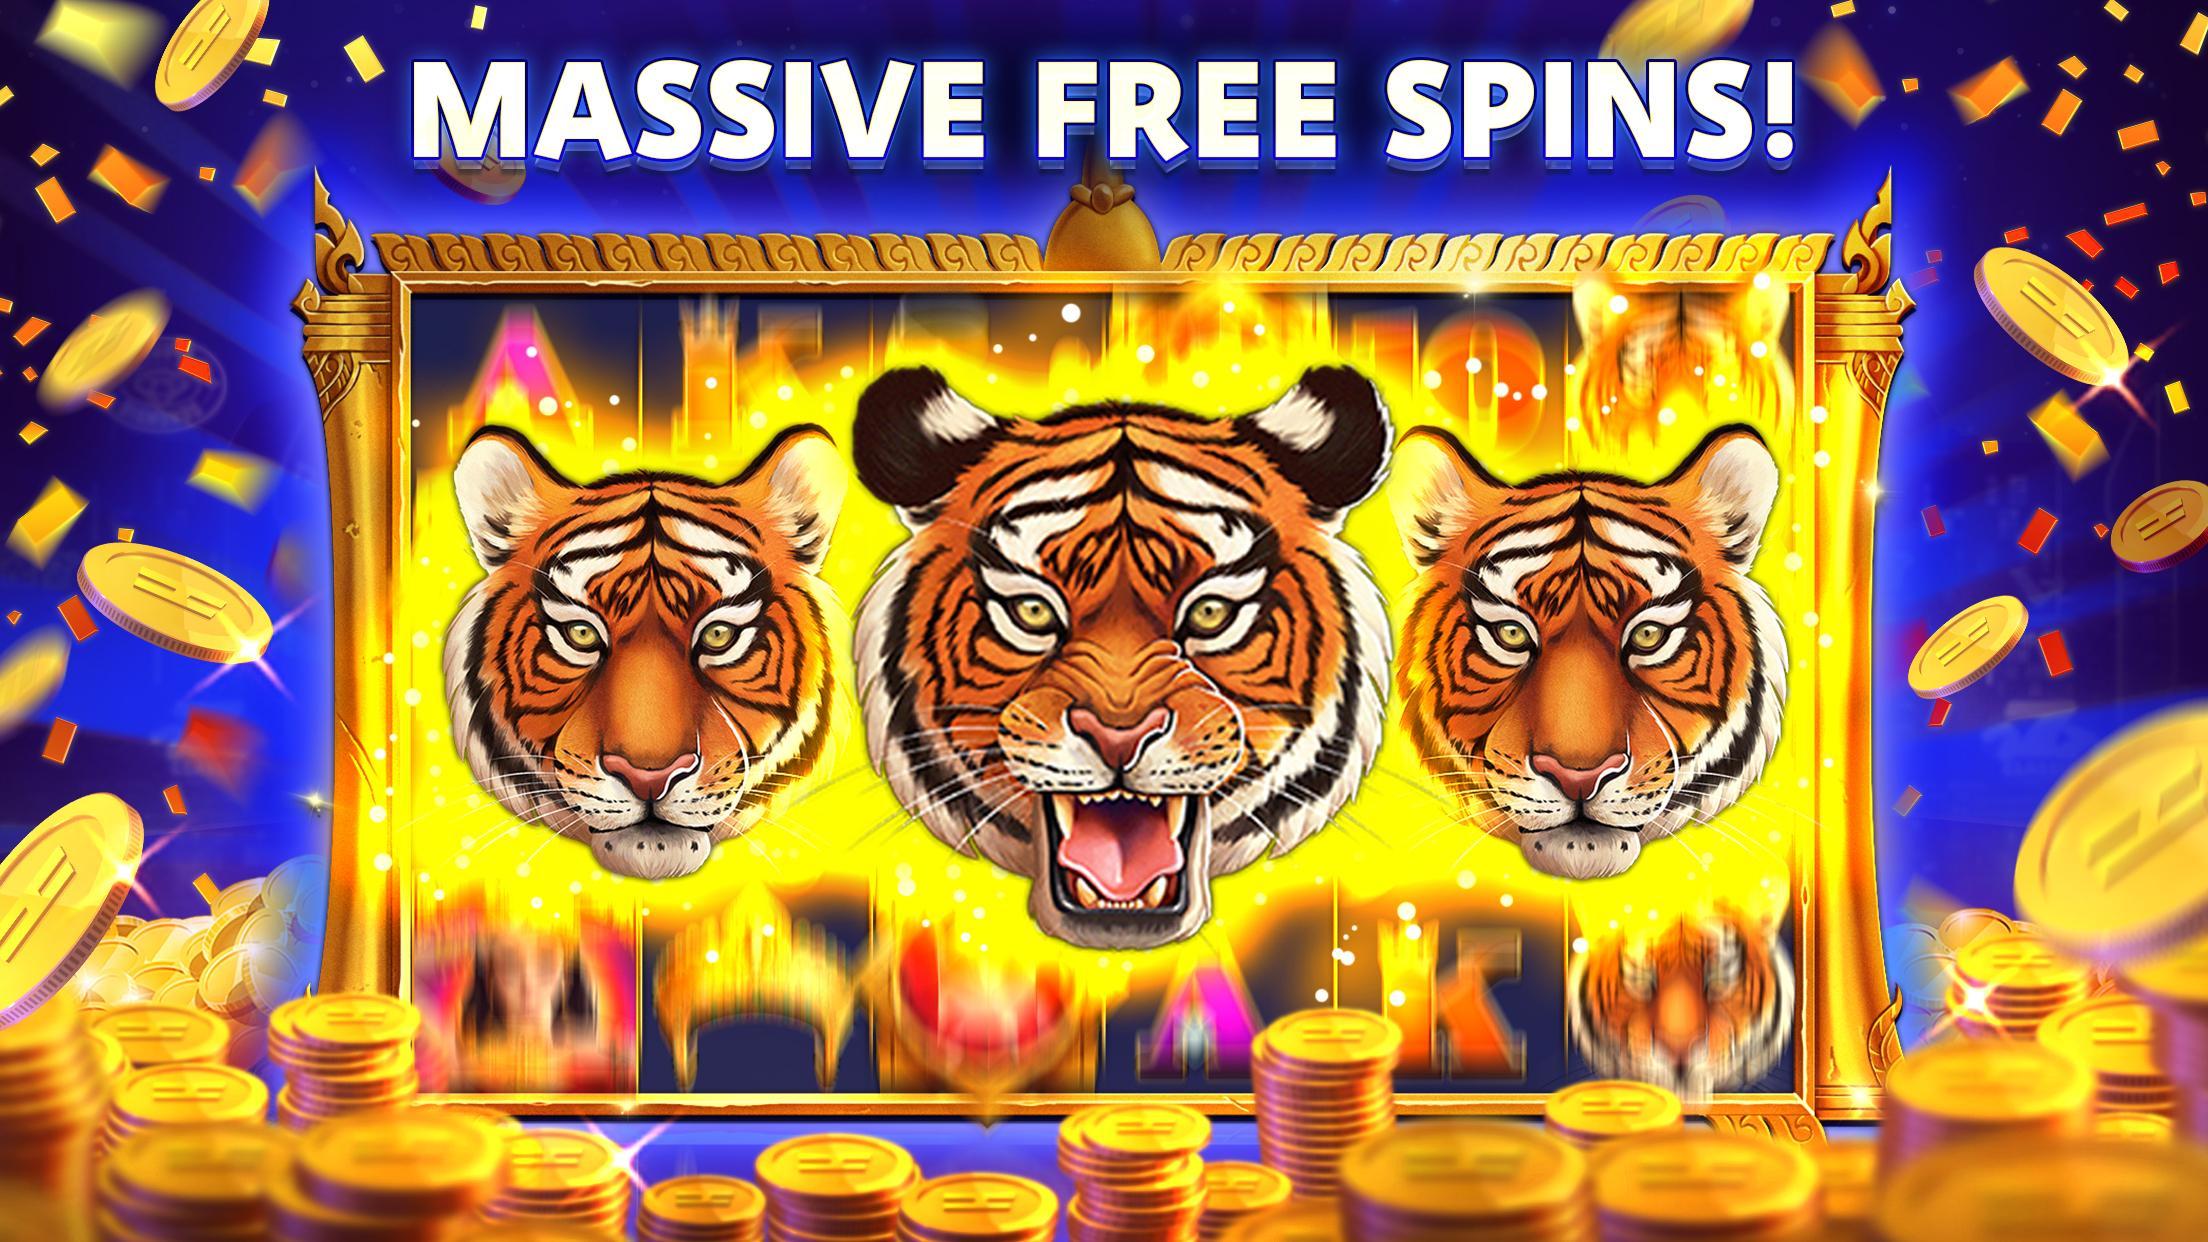 Stars Slots Casino - Vegas Slot Machines 1.0.1366 Screenshot 5